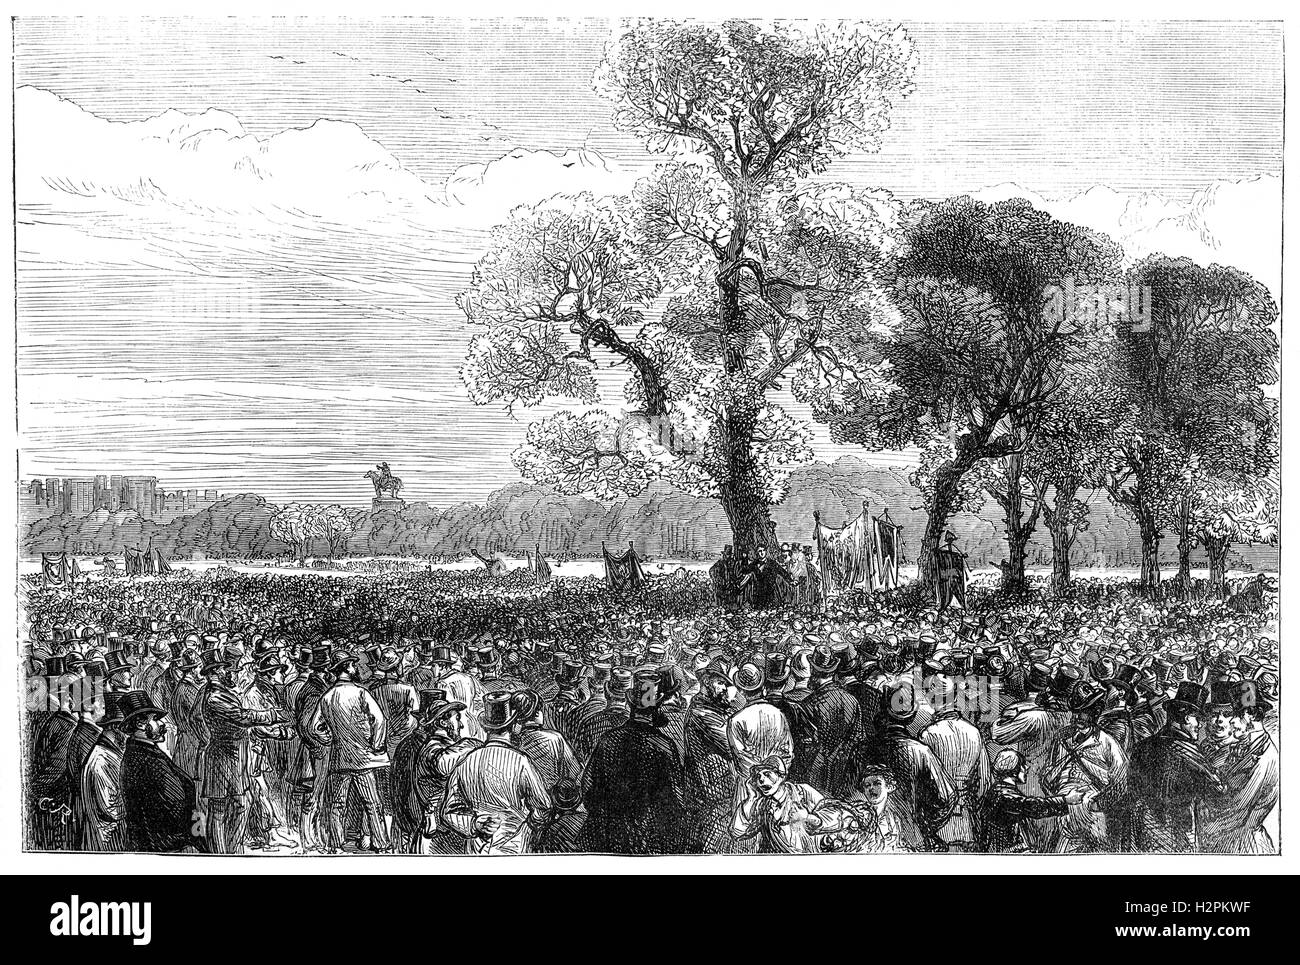 Die Reformatoren Tagung am Hyde Park im Juli 1866. Für illegal erklärt, ging es schließlich wie geplant unter dem Reformer Baum mit schätzungsweise 200.000 Menschen. Stockfoto